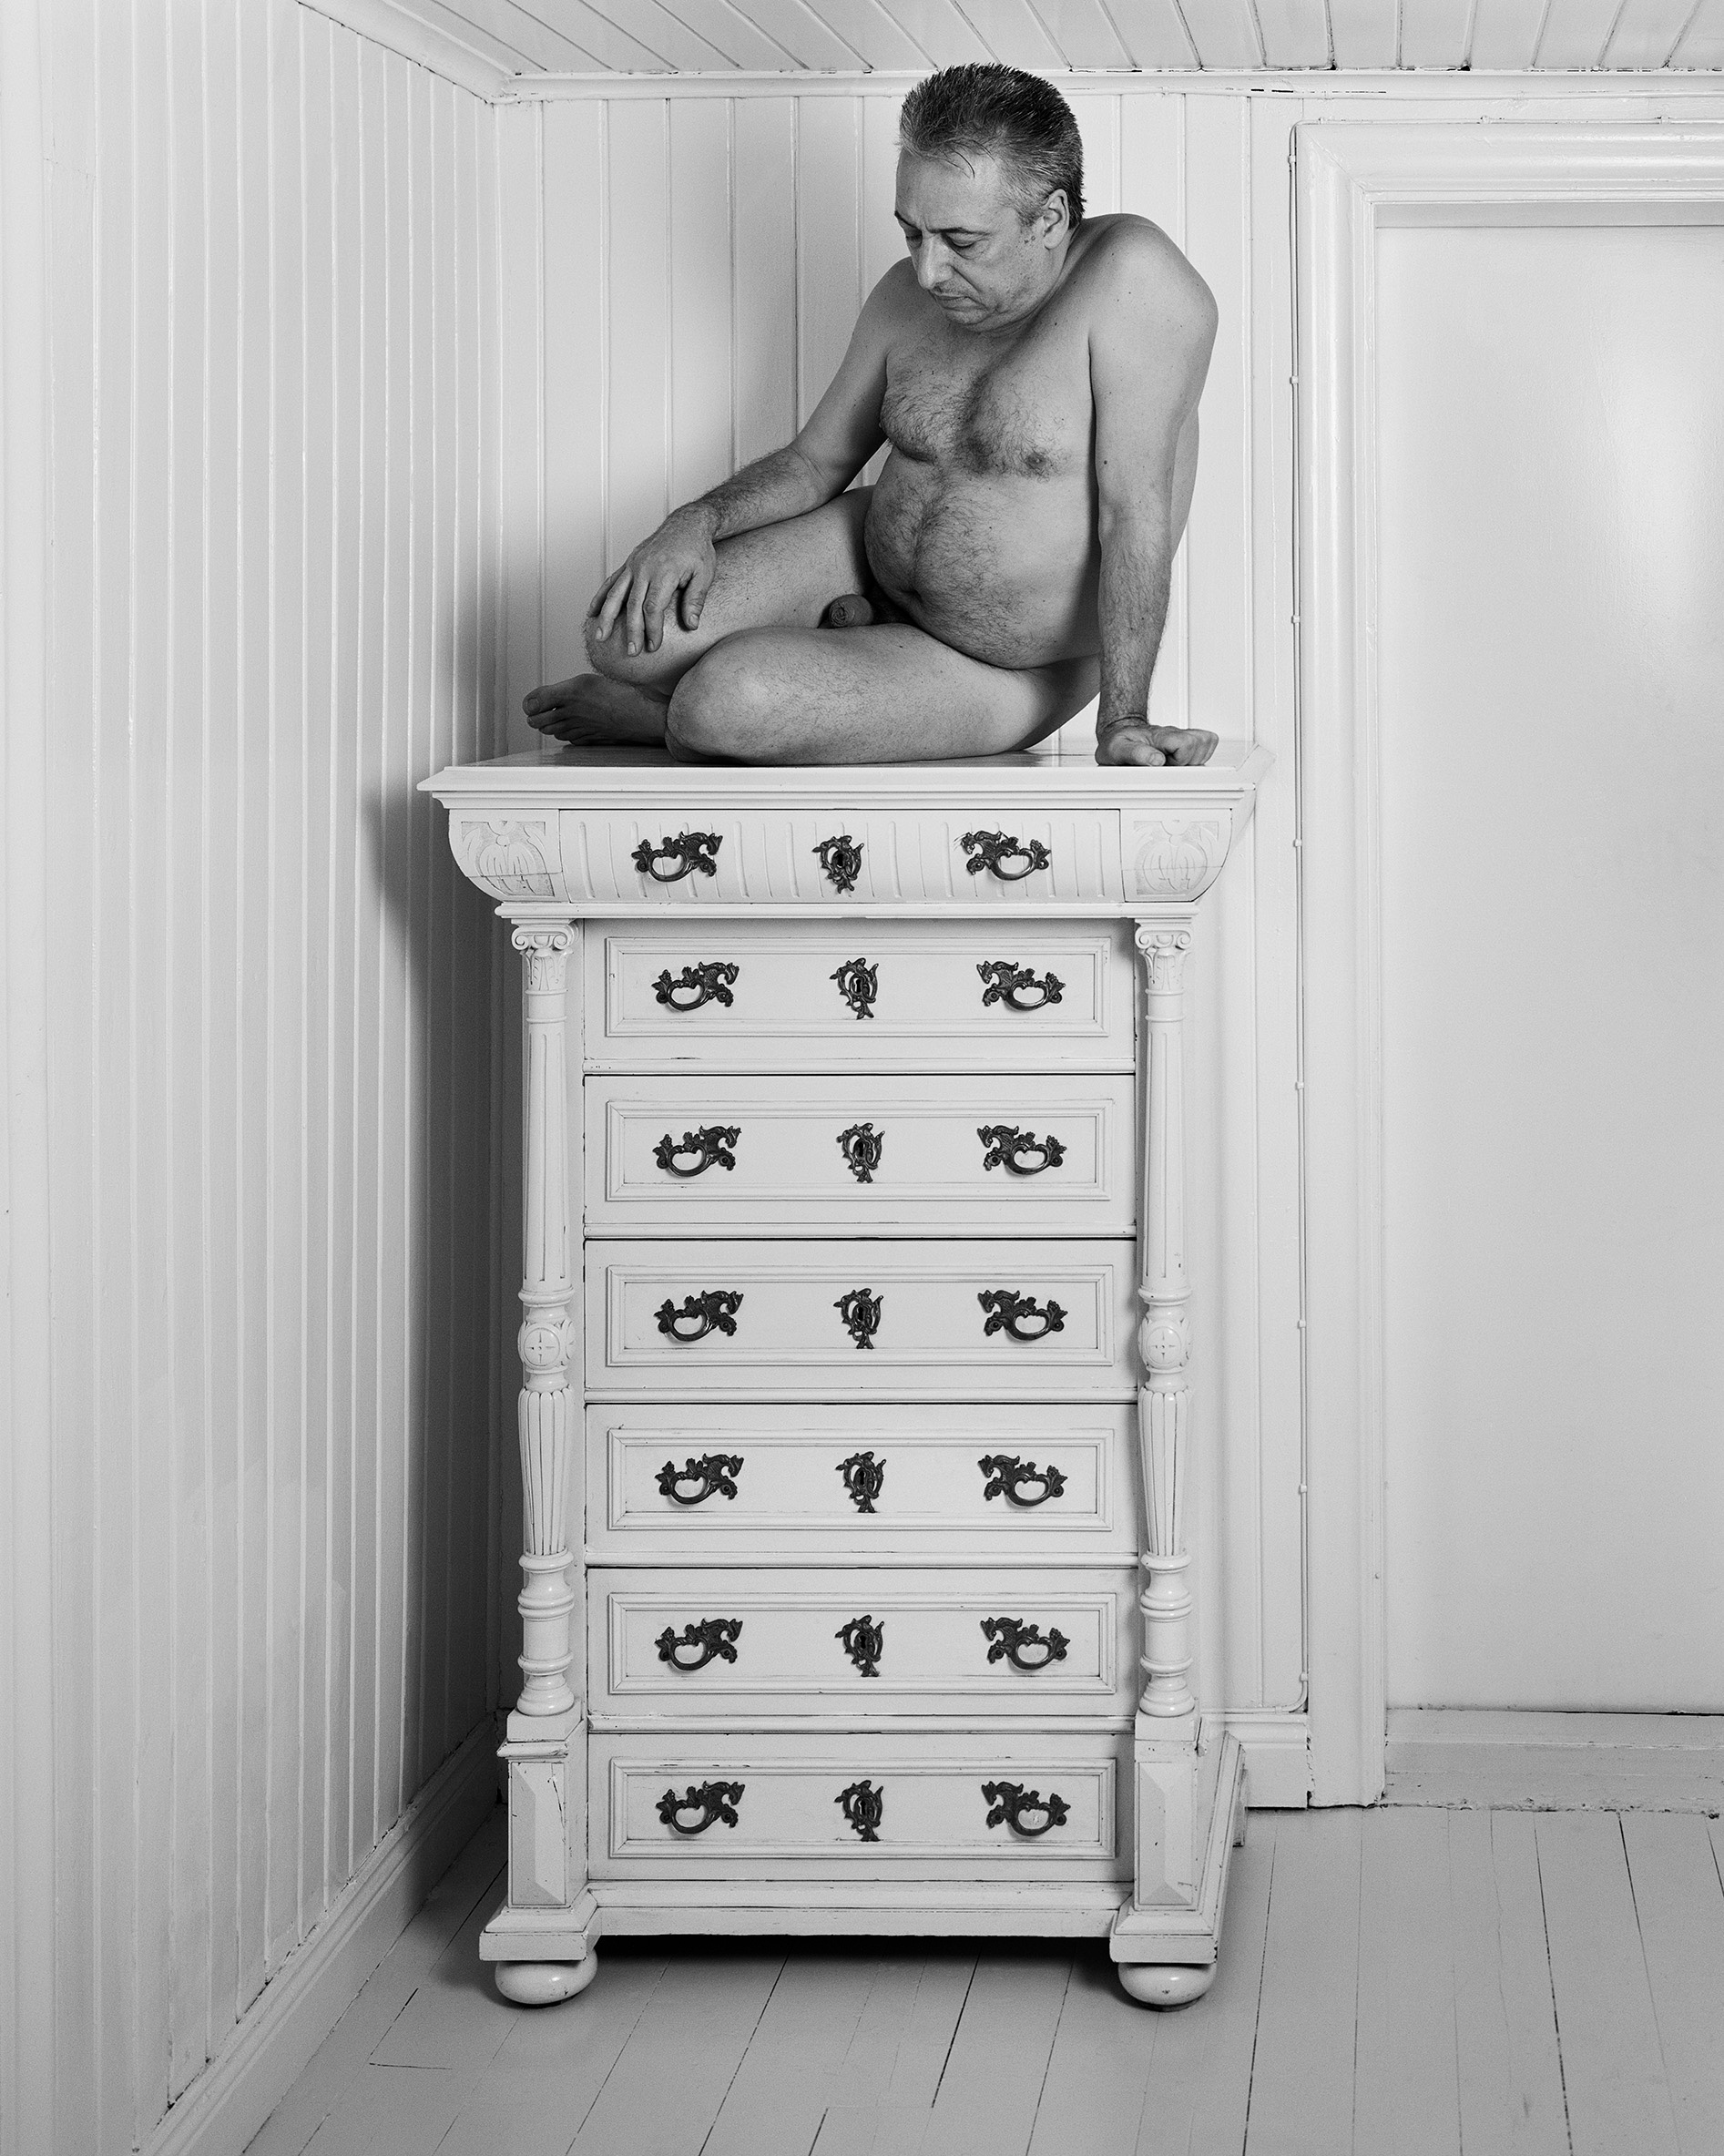 foto i svart vit föreställande en man som sitter naken på en vitmålad byrå